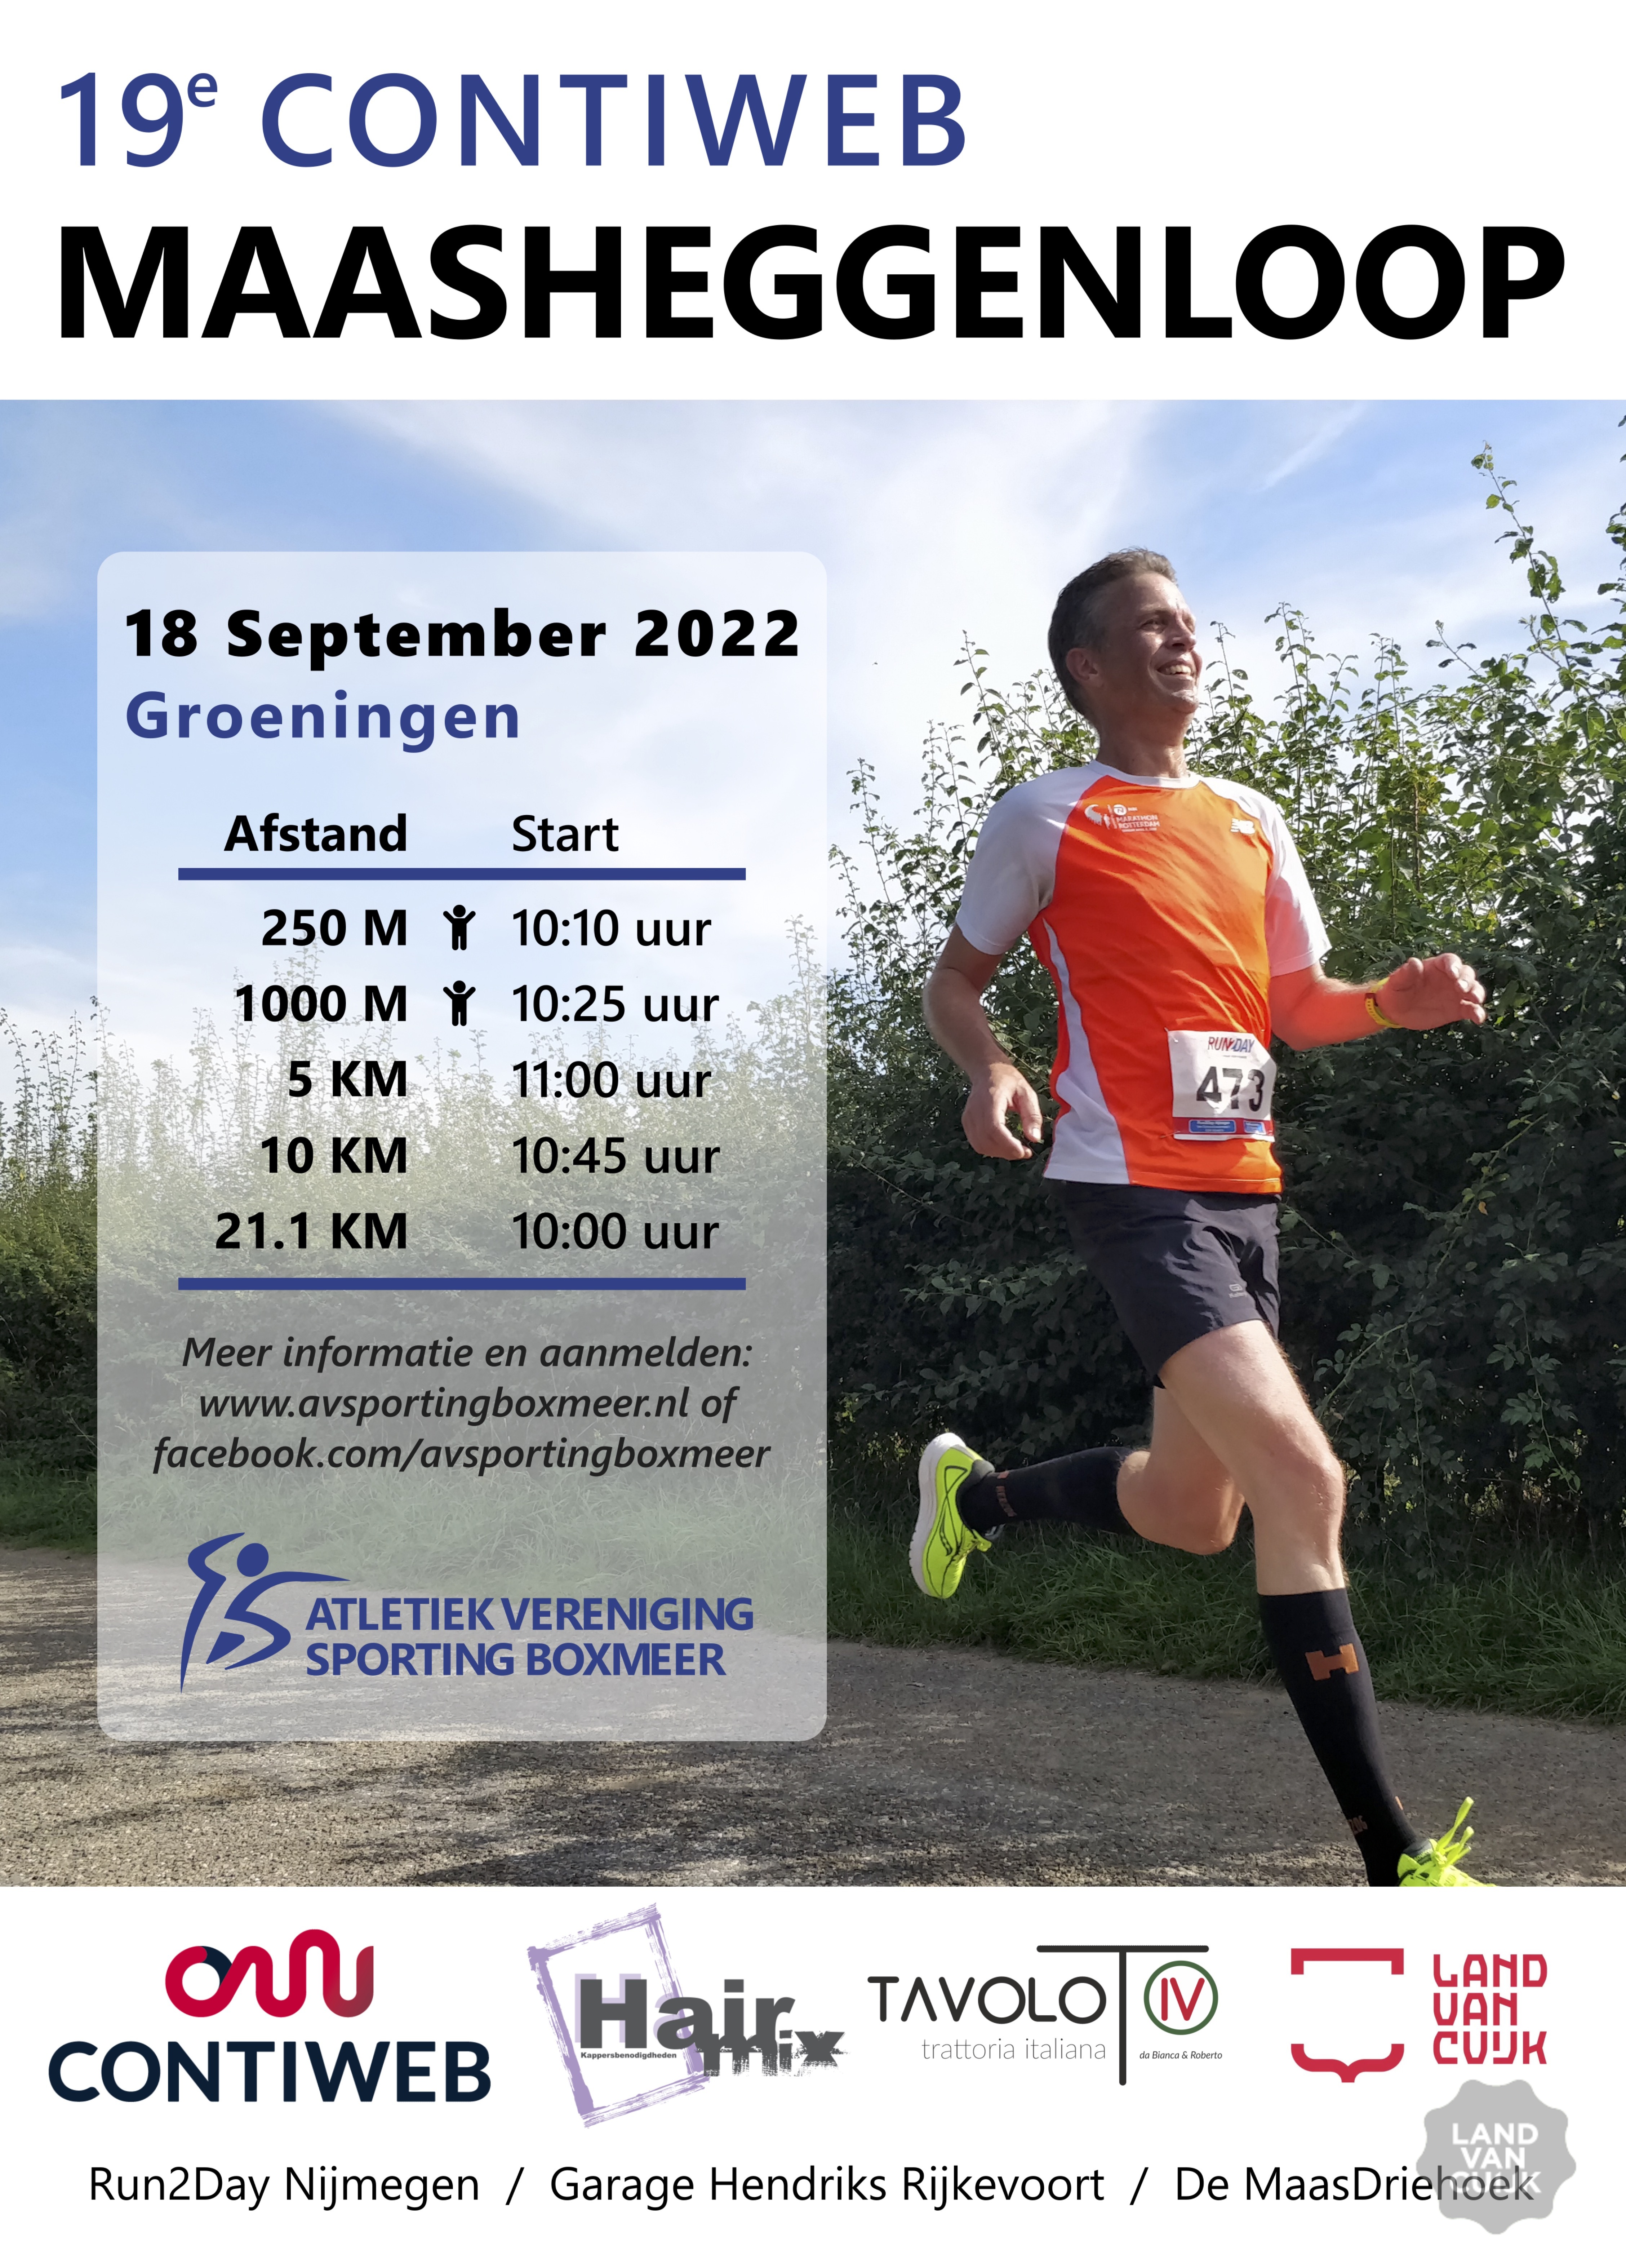 Contiweb Maasheggenloop 2022 op 18 September